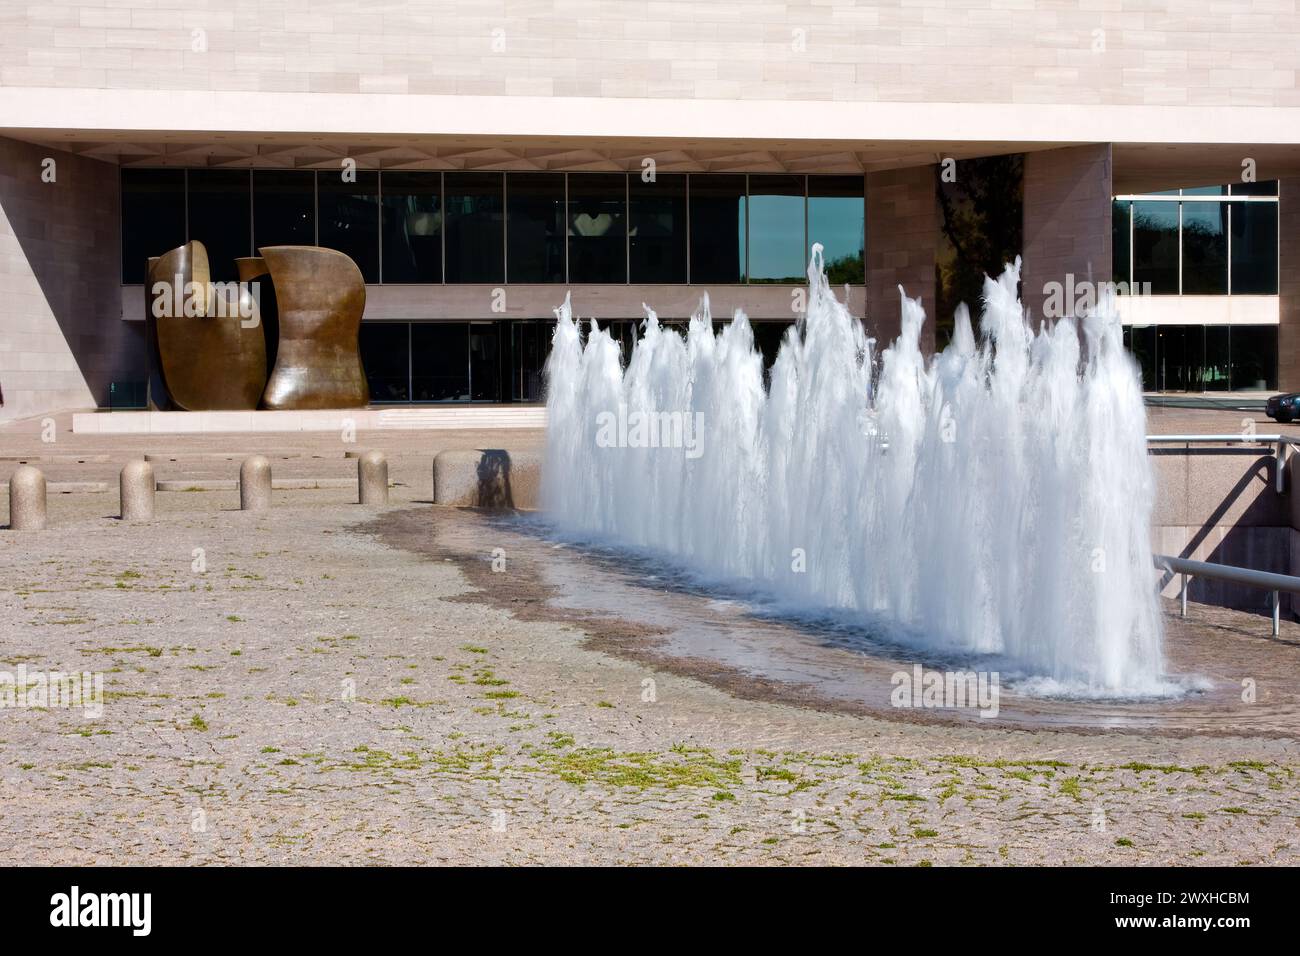 Washington, D.C., Stati Uniti, Nord America - Galleria Nazionale d'Arte, ingresso dell'ala est. Uno dei musei Smithsonian Institution. Foto Stock